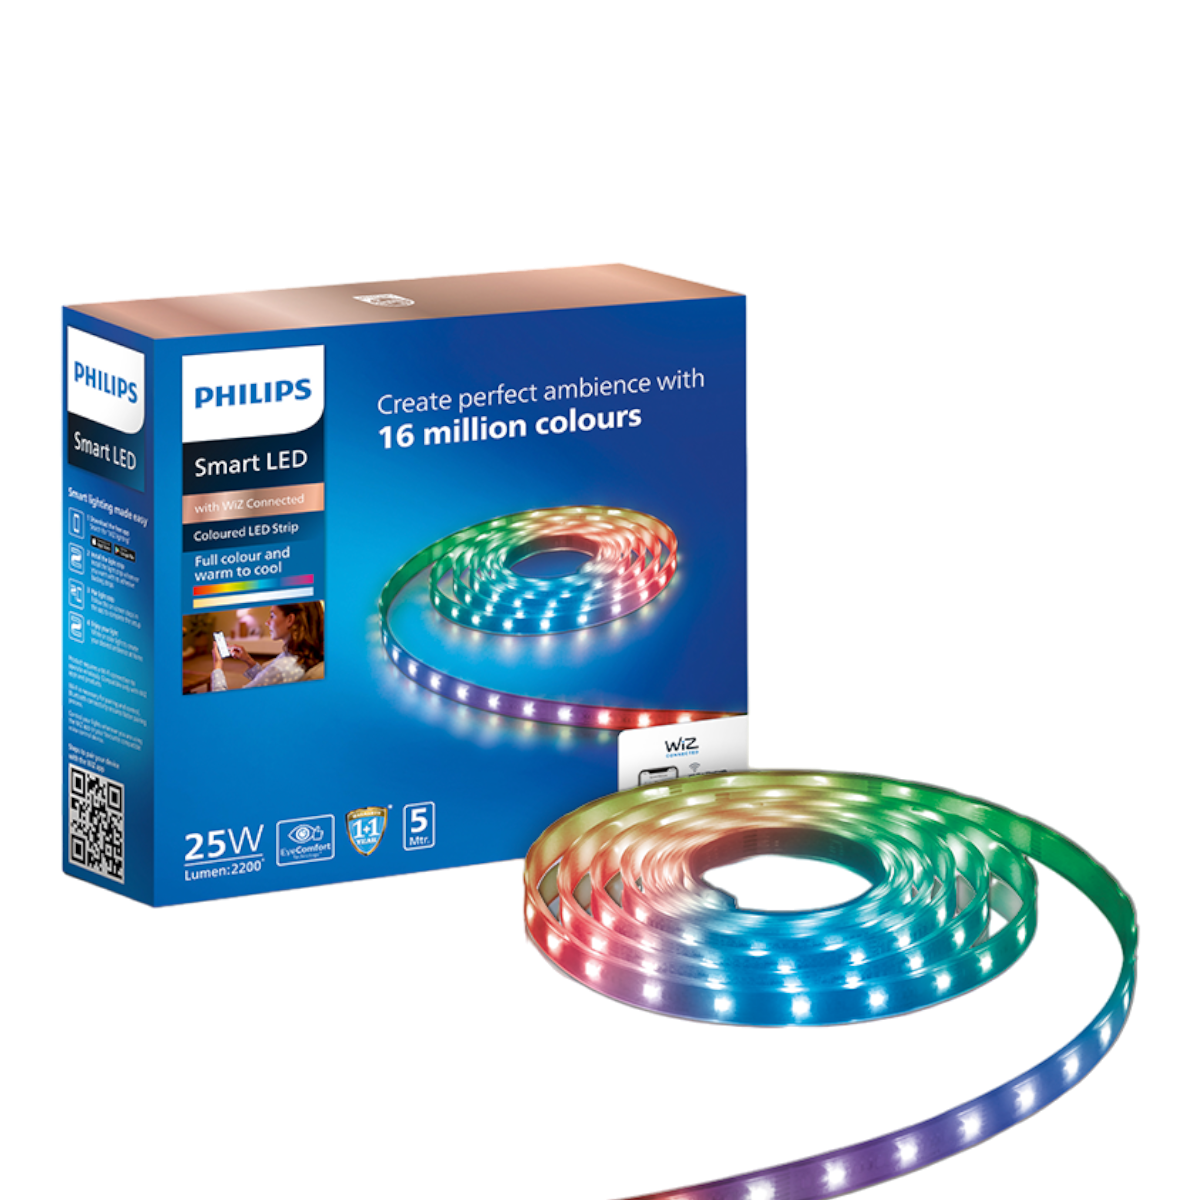 Buy Philips light – Philips Strip Store LED Philips lighting WiFi | Smart Online lighting